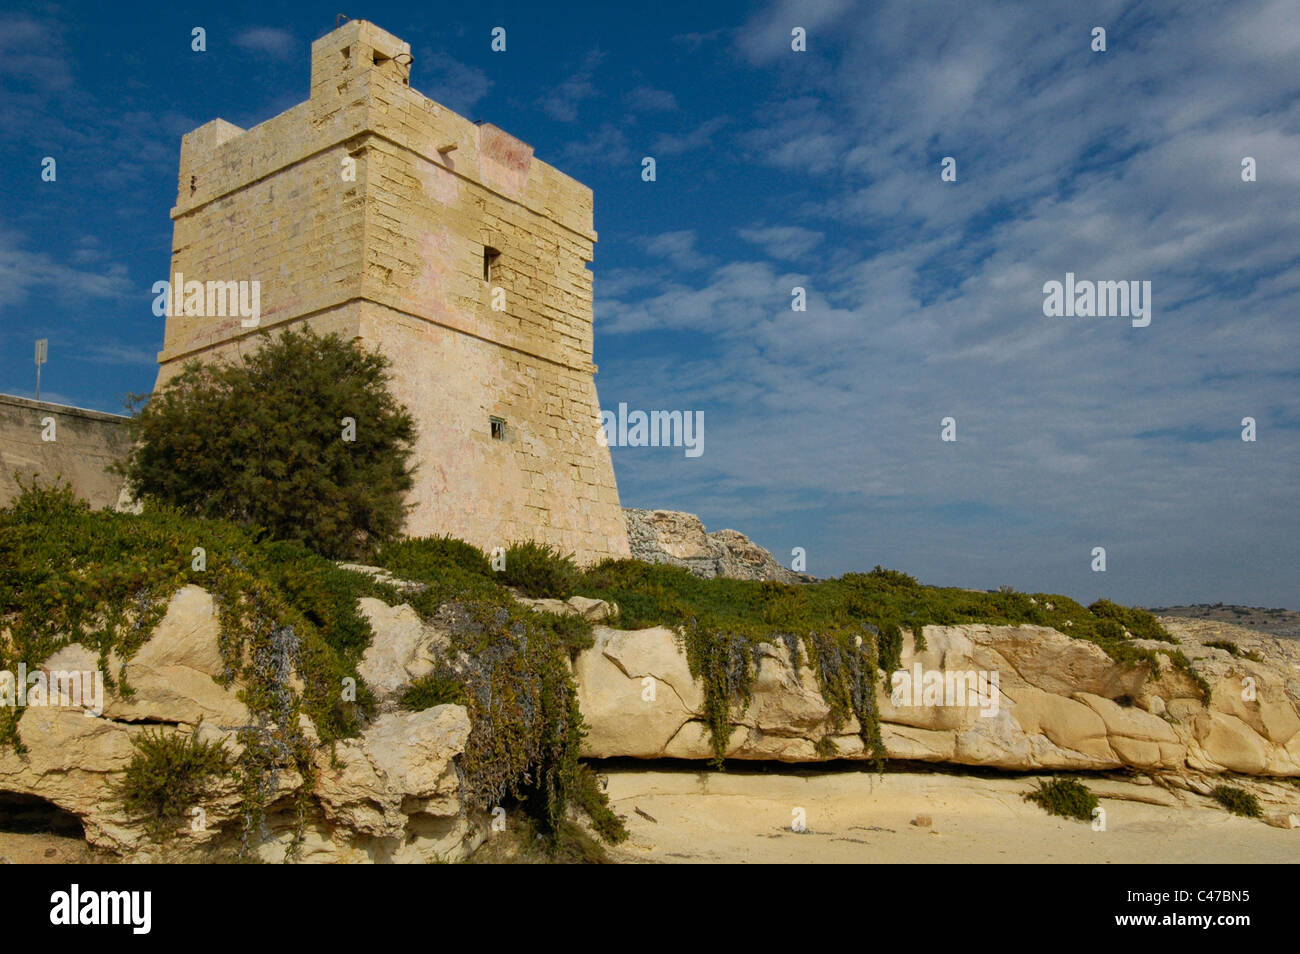 Angesichts der geringen Wachtturm Wardija Turm ursprünglich bekannt als Torre della Guardia di Giorno und auch bekannt als Bubaqra Turm gebaut im Jahre 1659 die dreizehnte der De Redin Towers in die Grenzen von Żurrieq, einer Stadt in der südlichen Region von Malta. Stockfoto